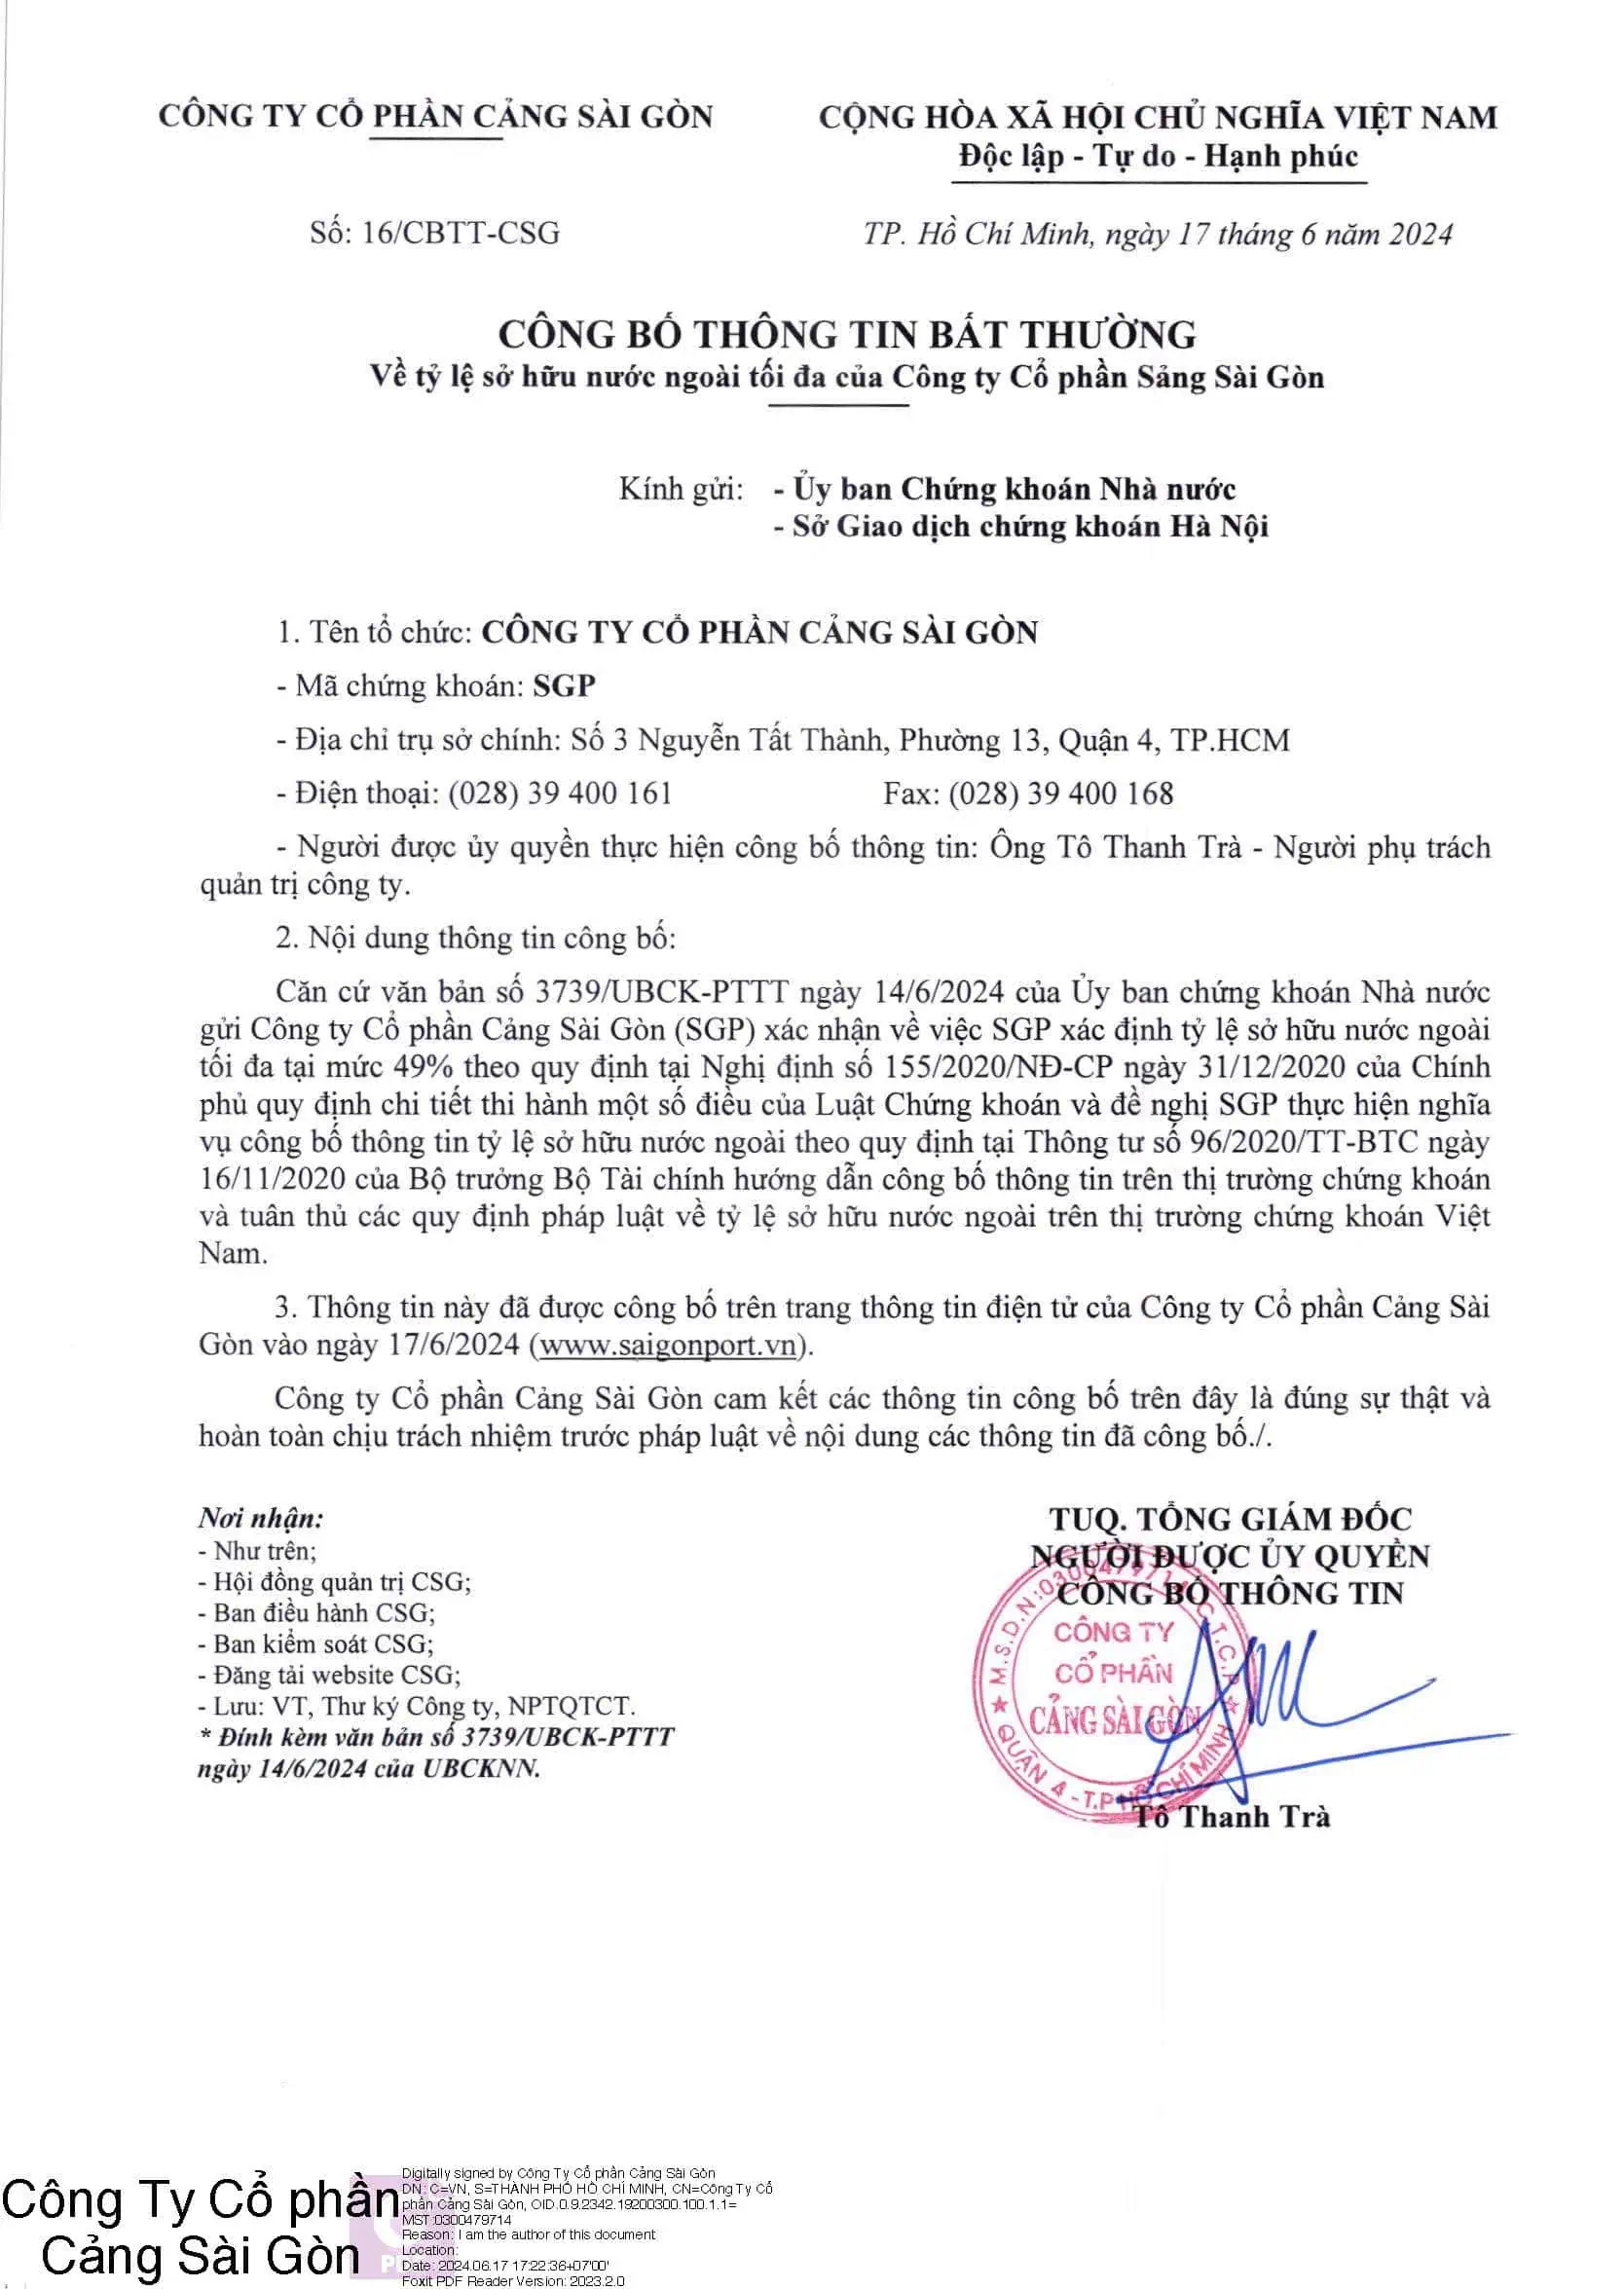 Công bố thông tin về việc sở hữu nước ngoài tối đa của Công ty Cổ phần Cảng Sài Gòn